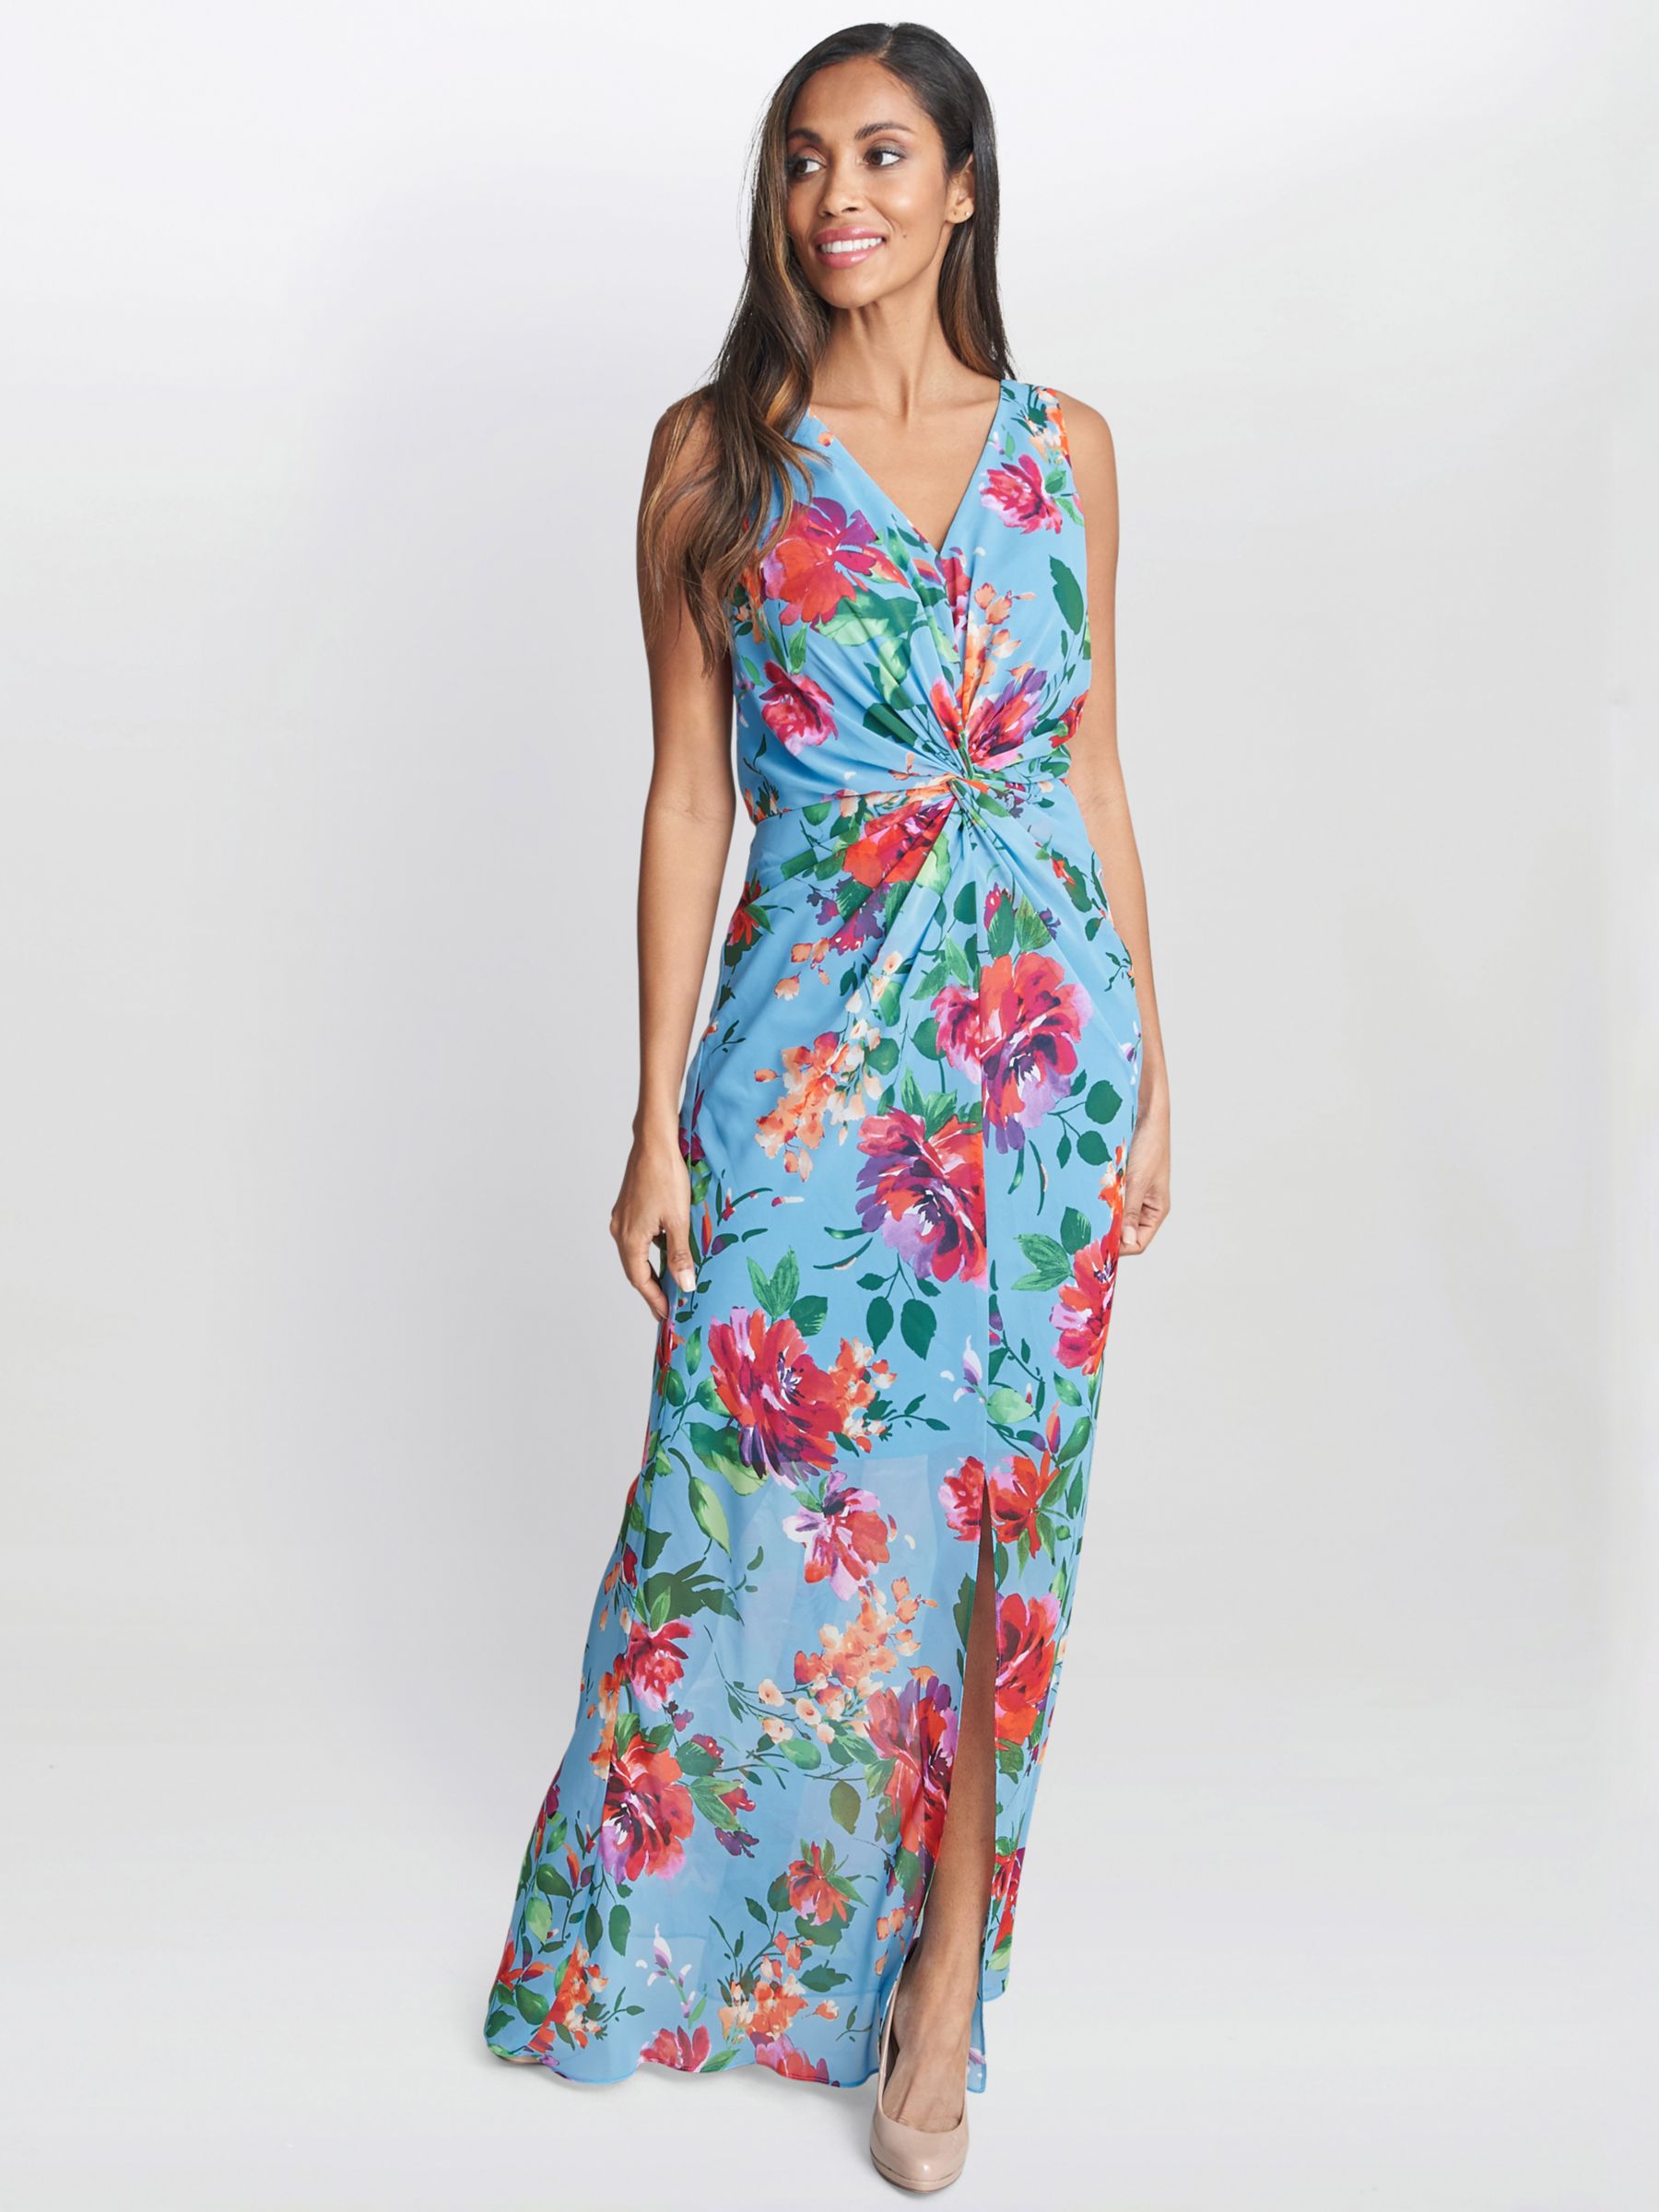 Gina Bacconi Jennifer Floral Twist Detail Maxi Dress, Aqua/Multi, 10